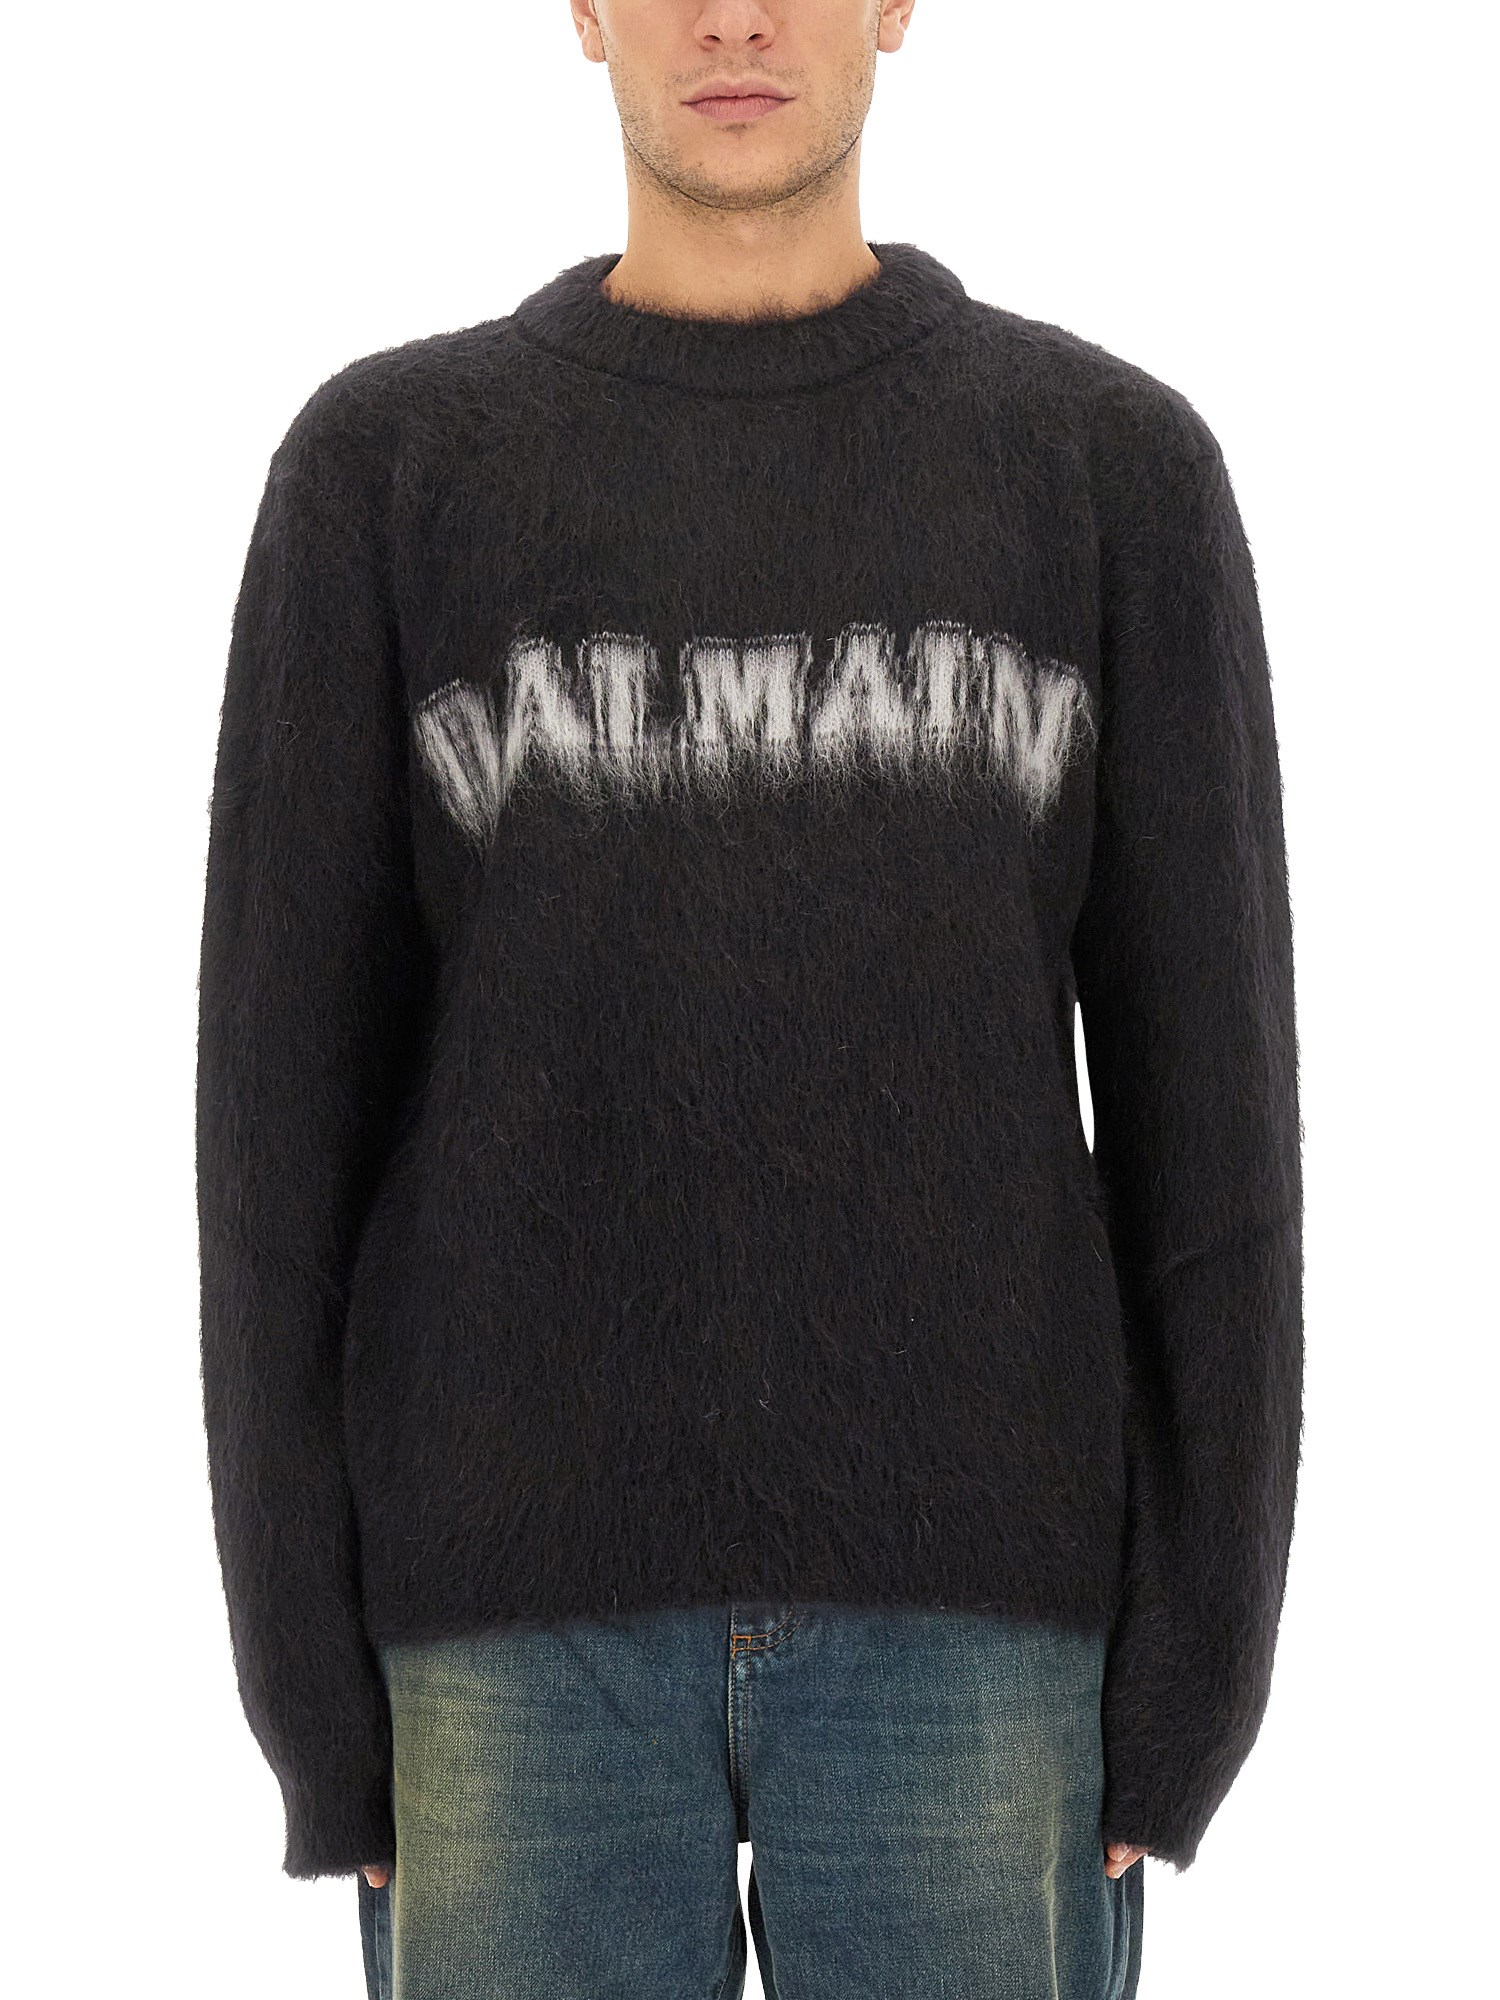 balmain retro logo pullover